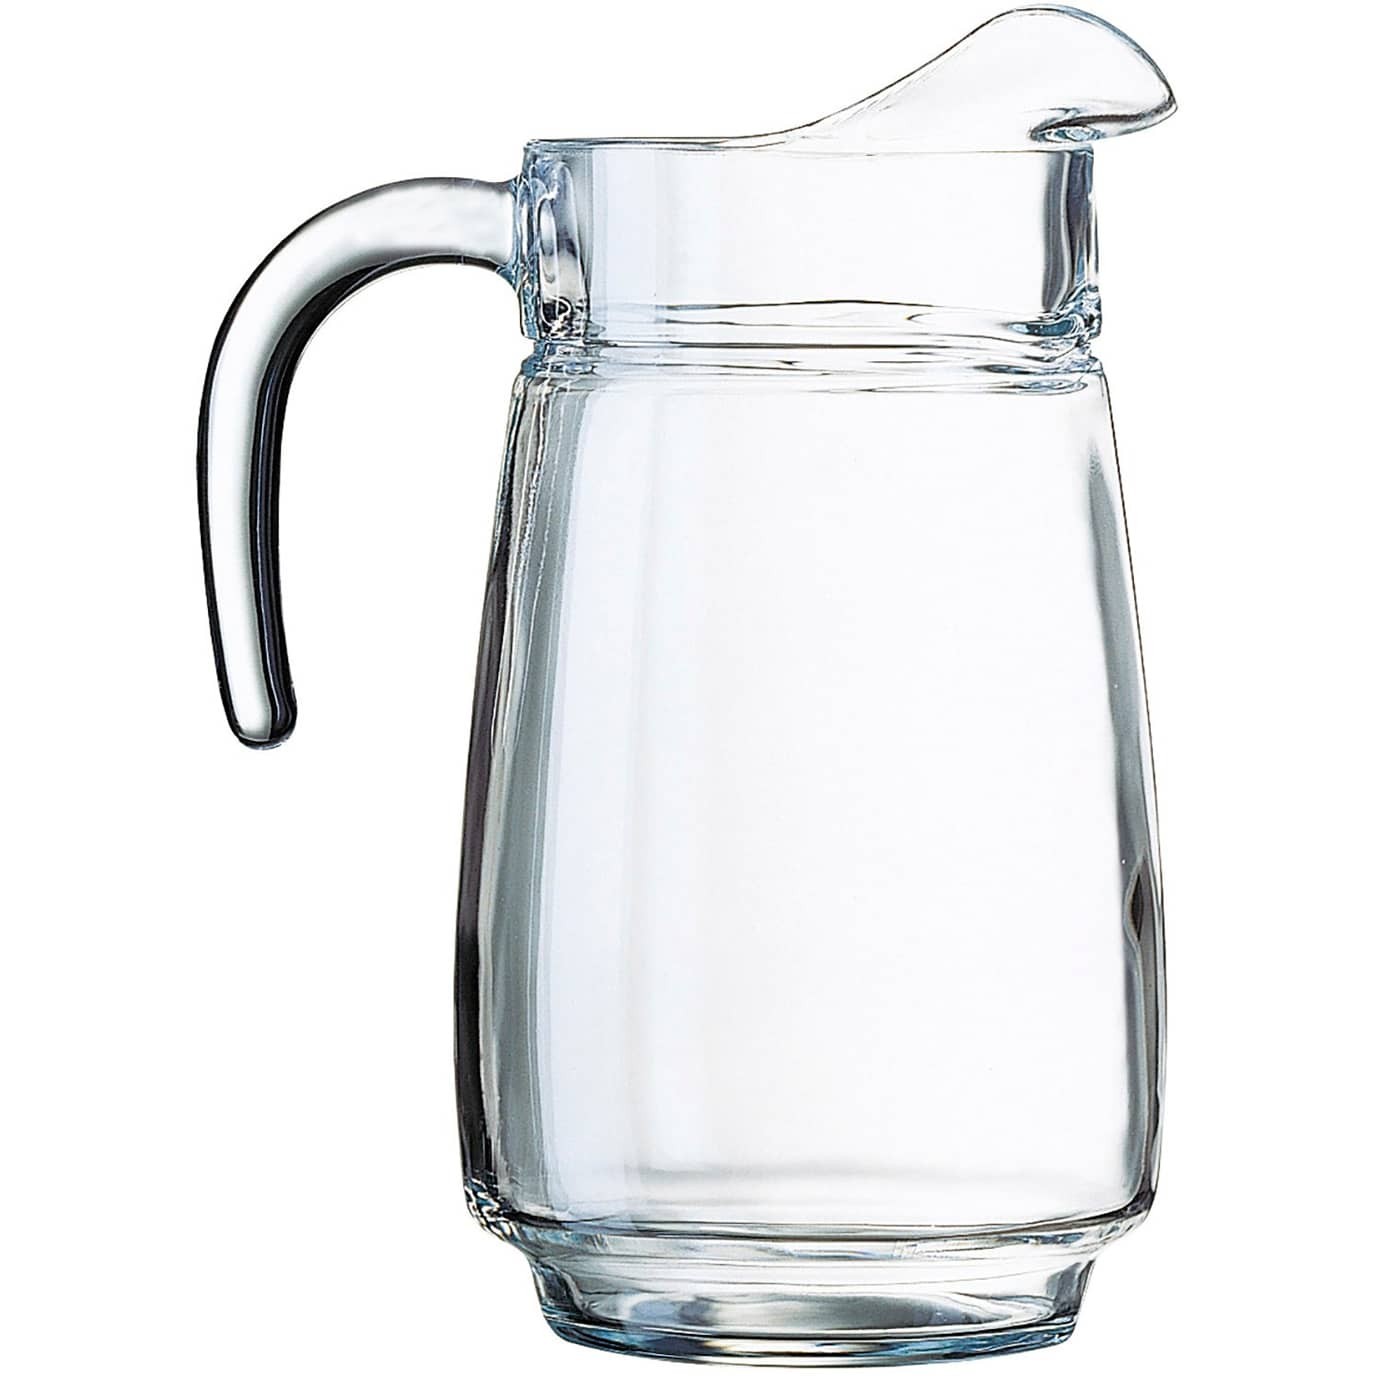 https://arcashop.es/13872/jarra-de-cristal-2-litros-para-servir-agua-luminarc-tivoli.jpg